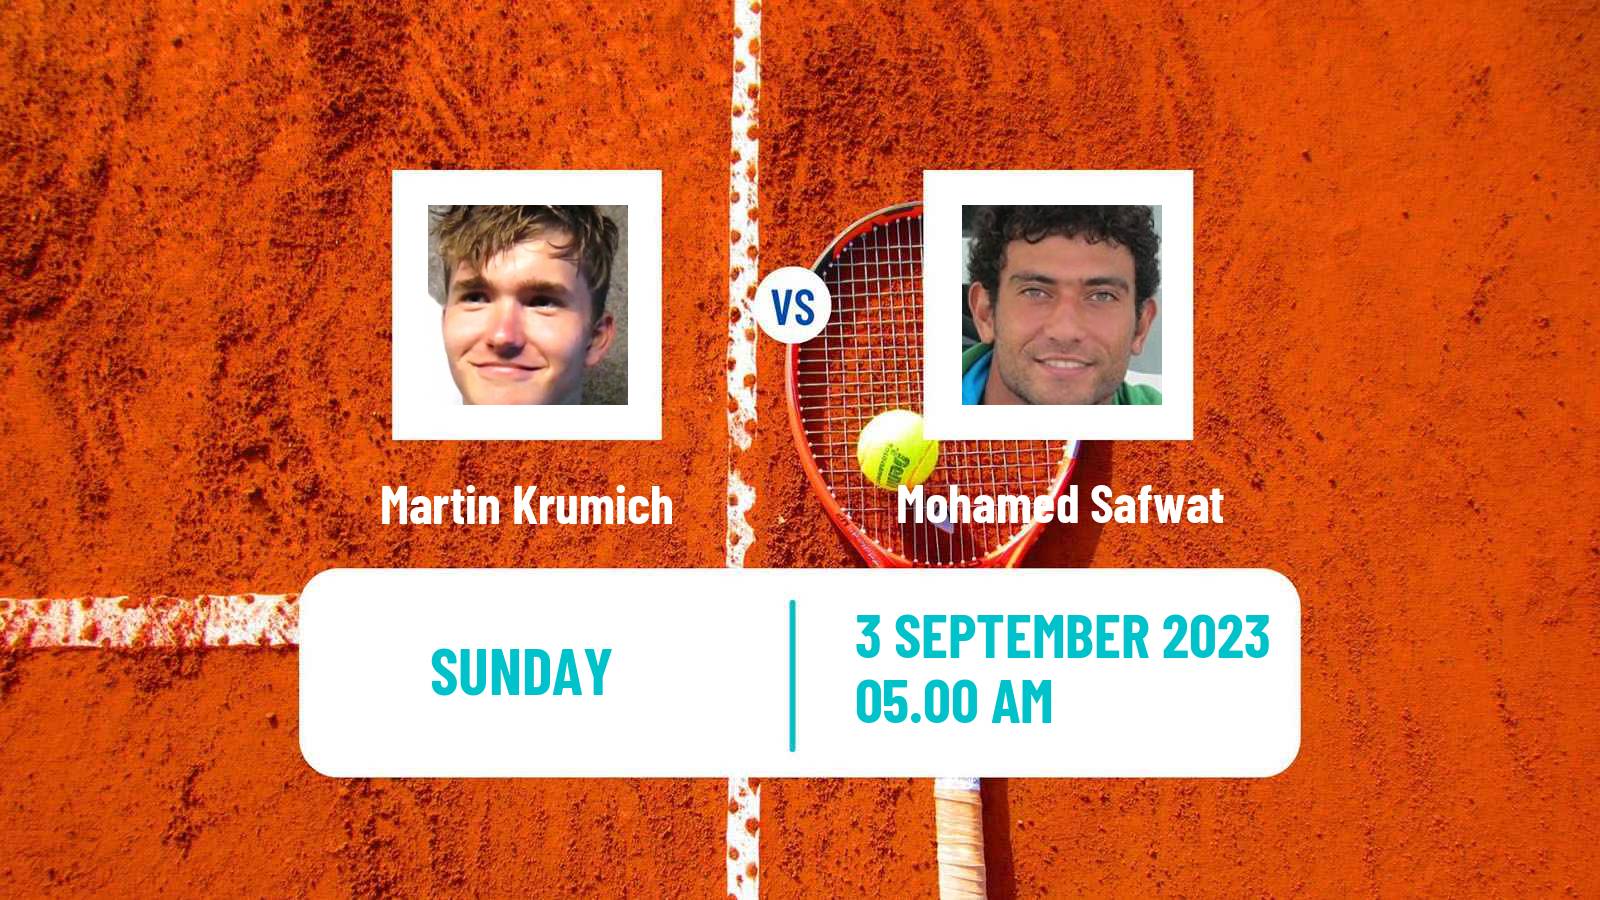 Tennis ITF M25 Jablonec Nad Nisou 2 Men Martin Krumich - Mohamed Safwat